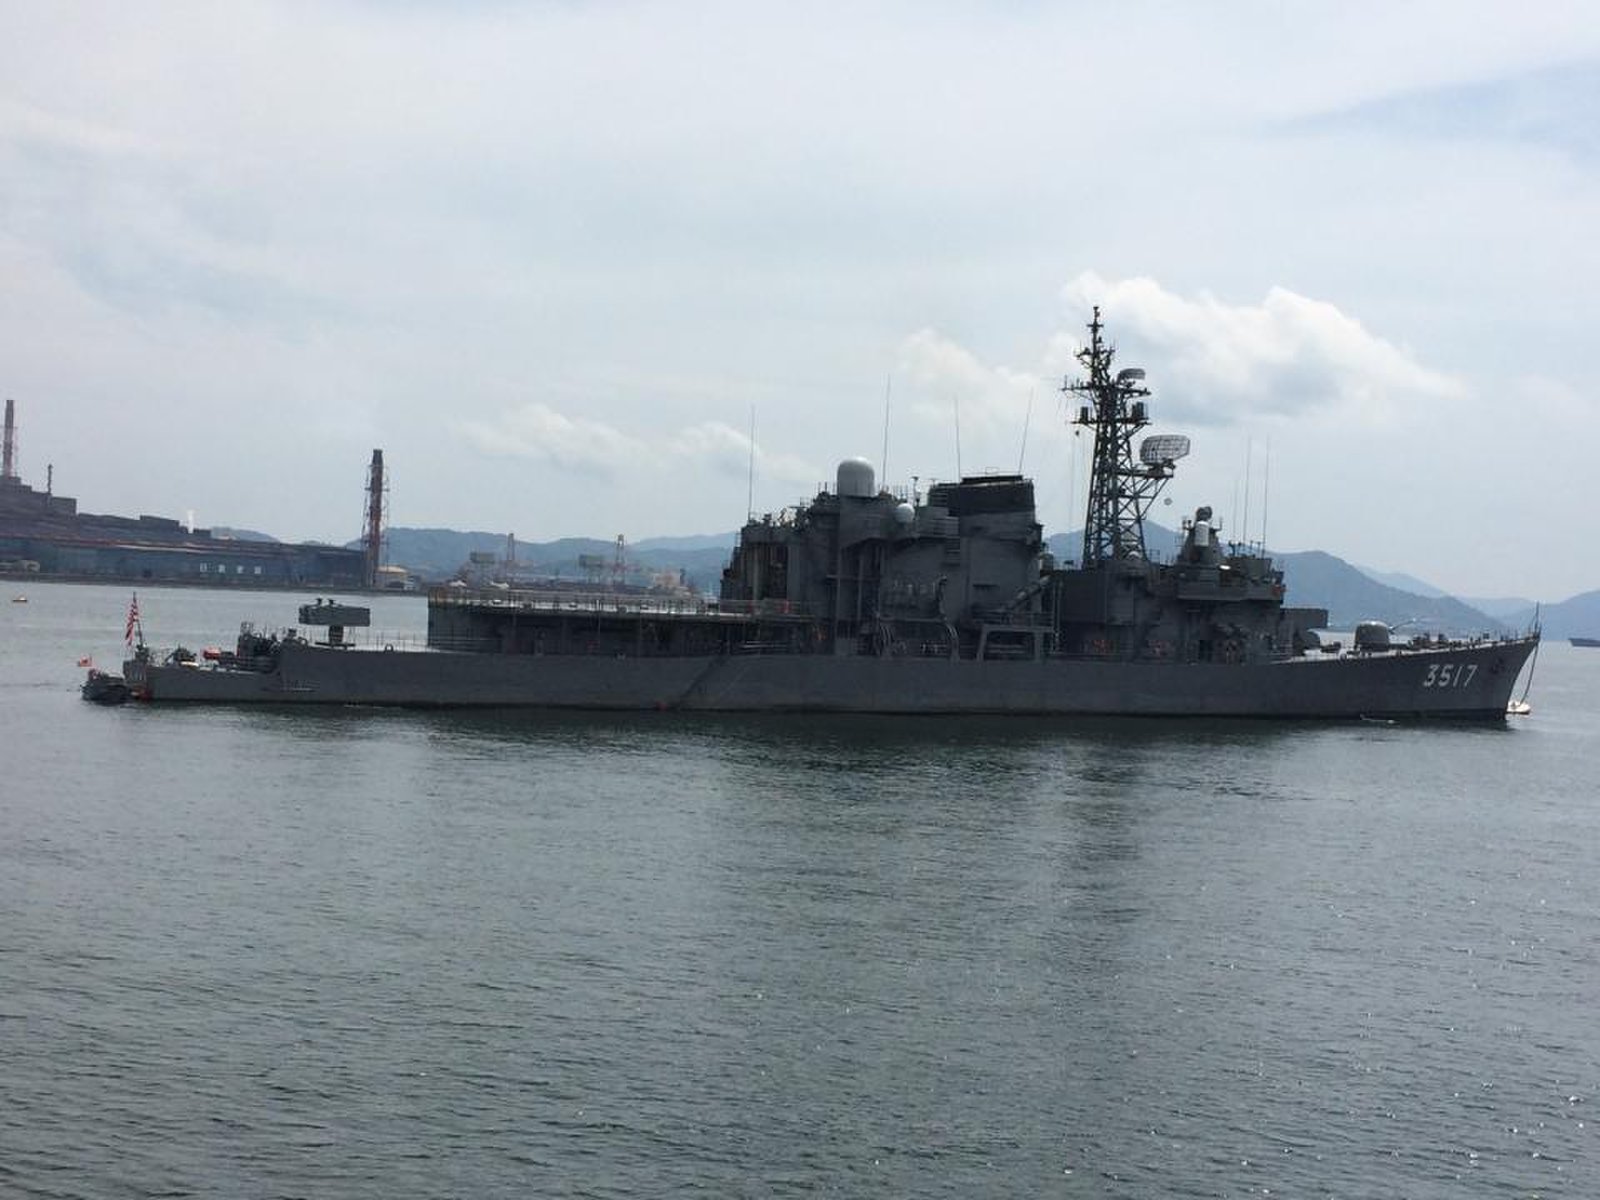 大迫力戦艦 大和 実物模型 海に浮かぶ大型船を間近で体感 広島呉市